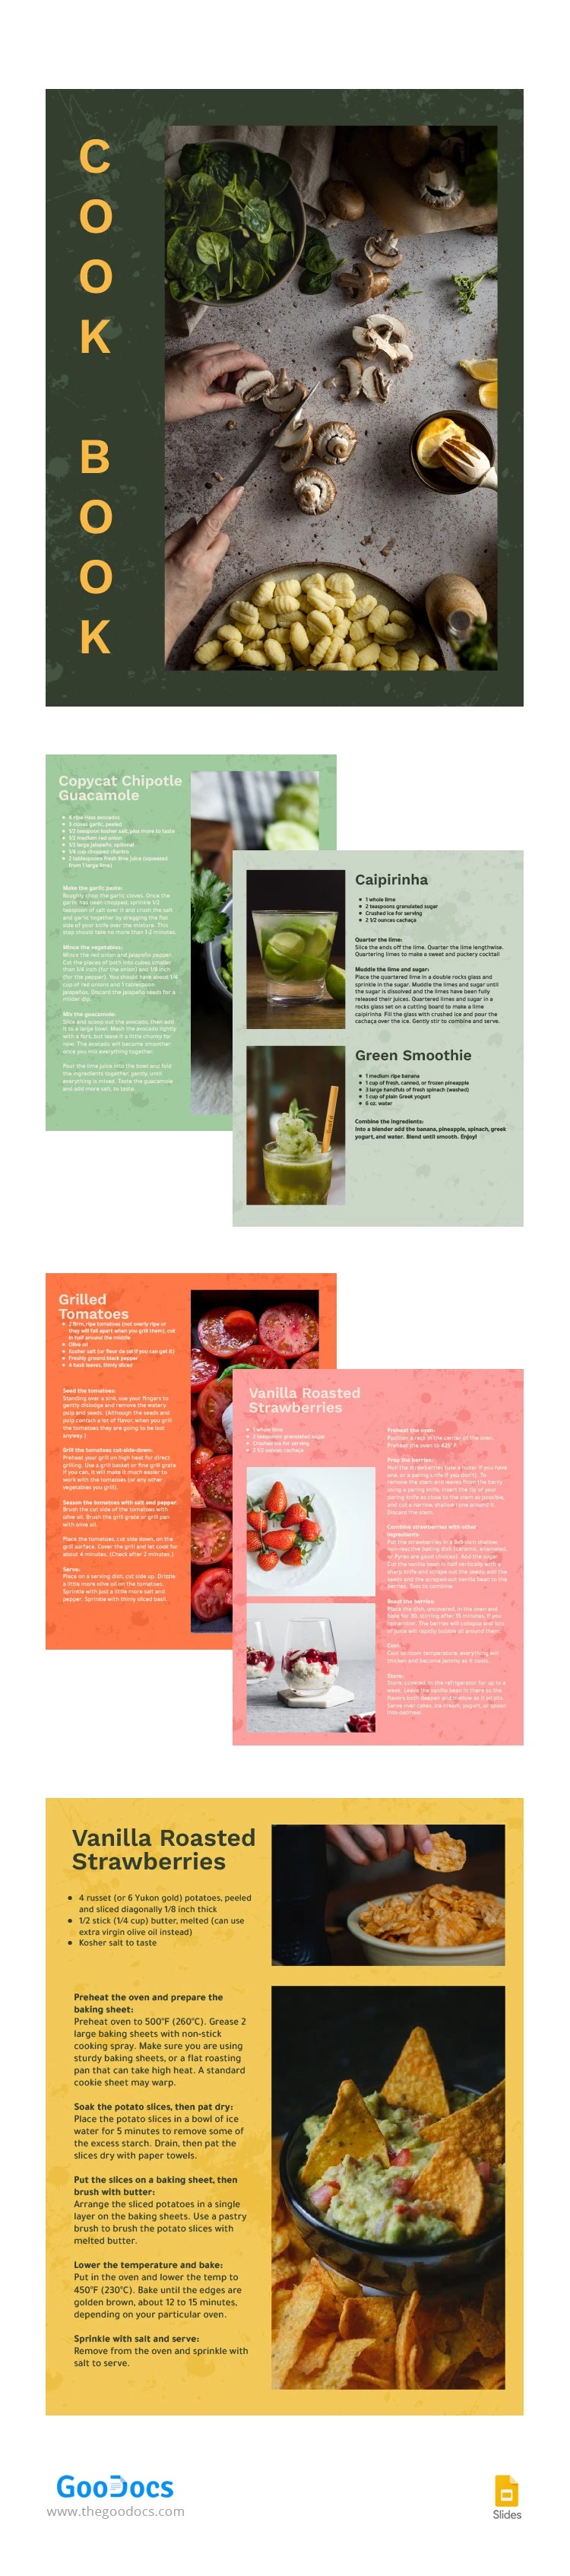 Livre de cuisine coloré - free Google Docs Template - 10063265